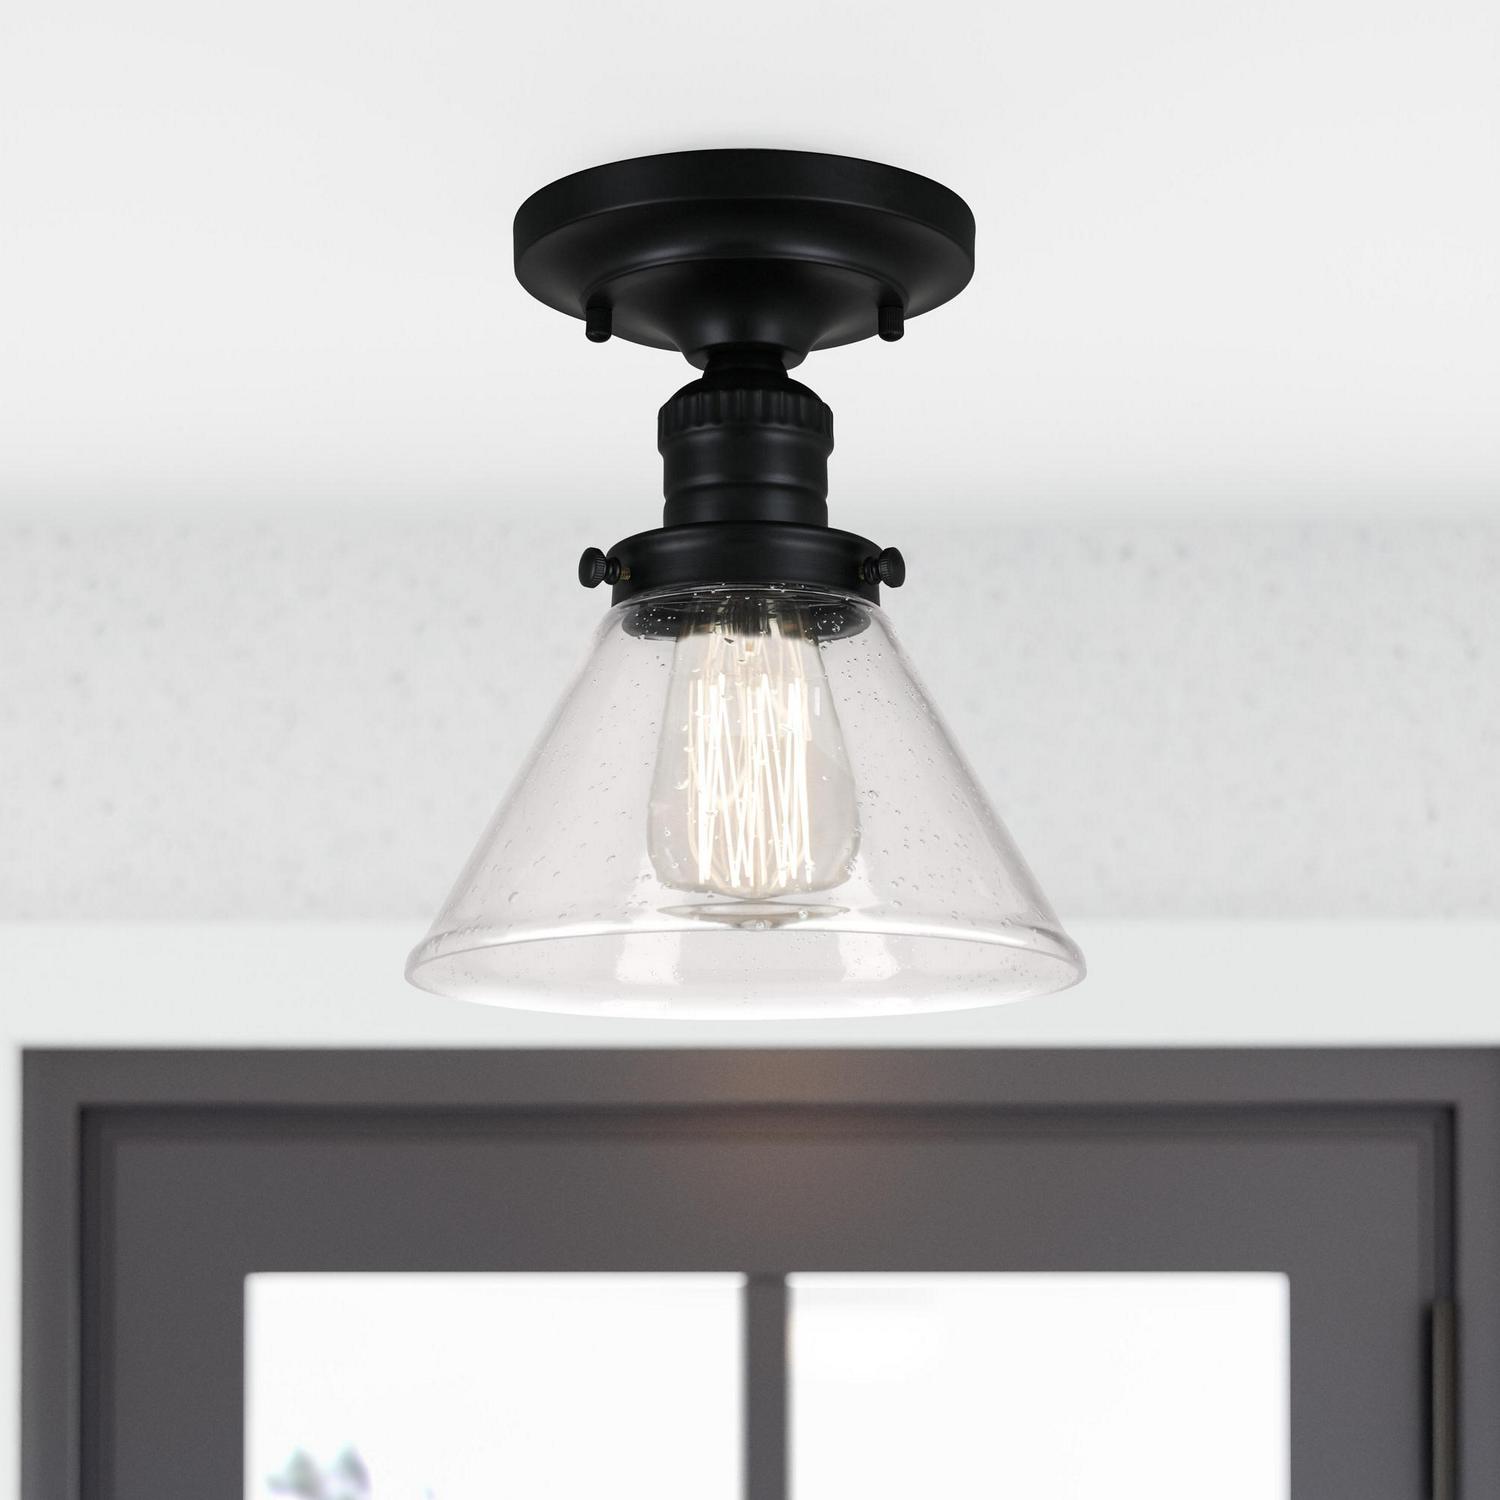 Design House Augustin Ceiling Light in Matte Black